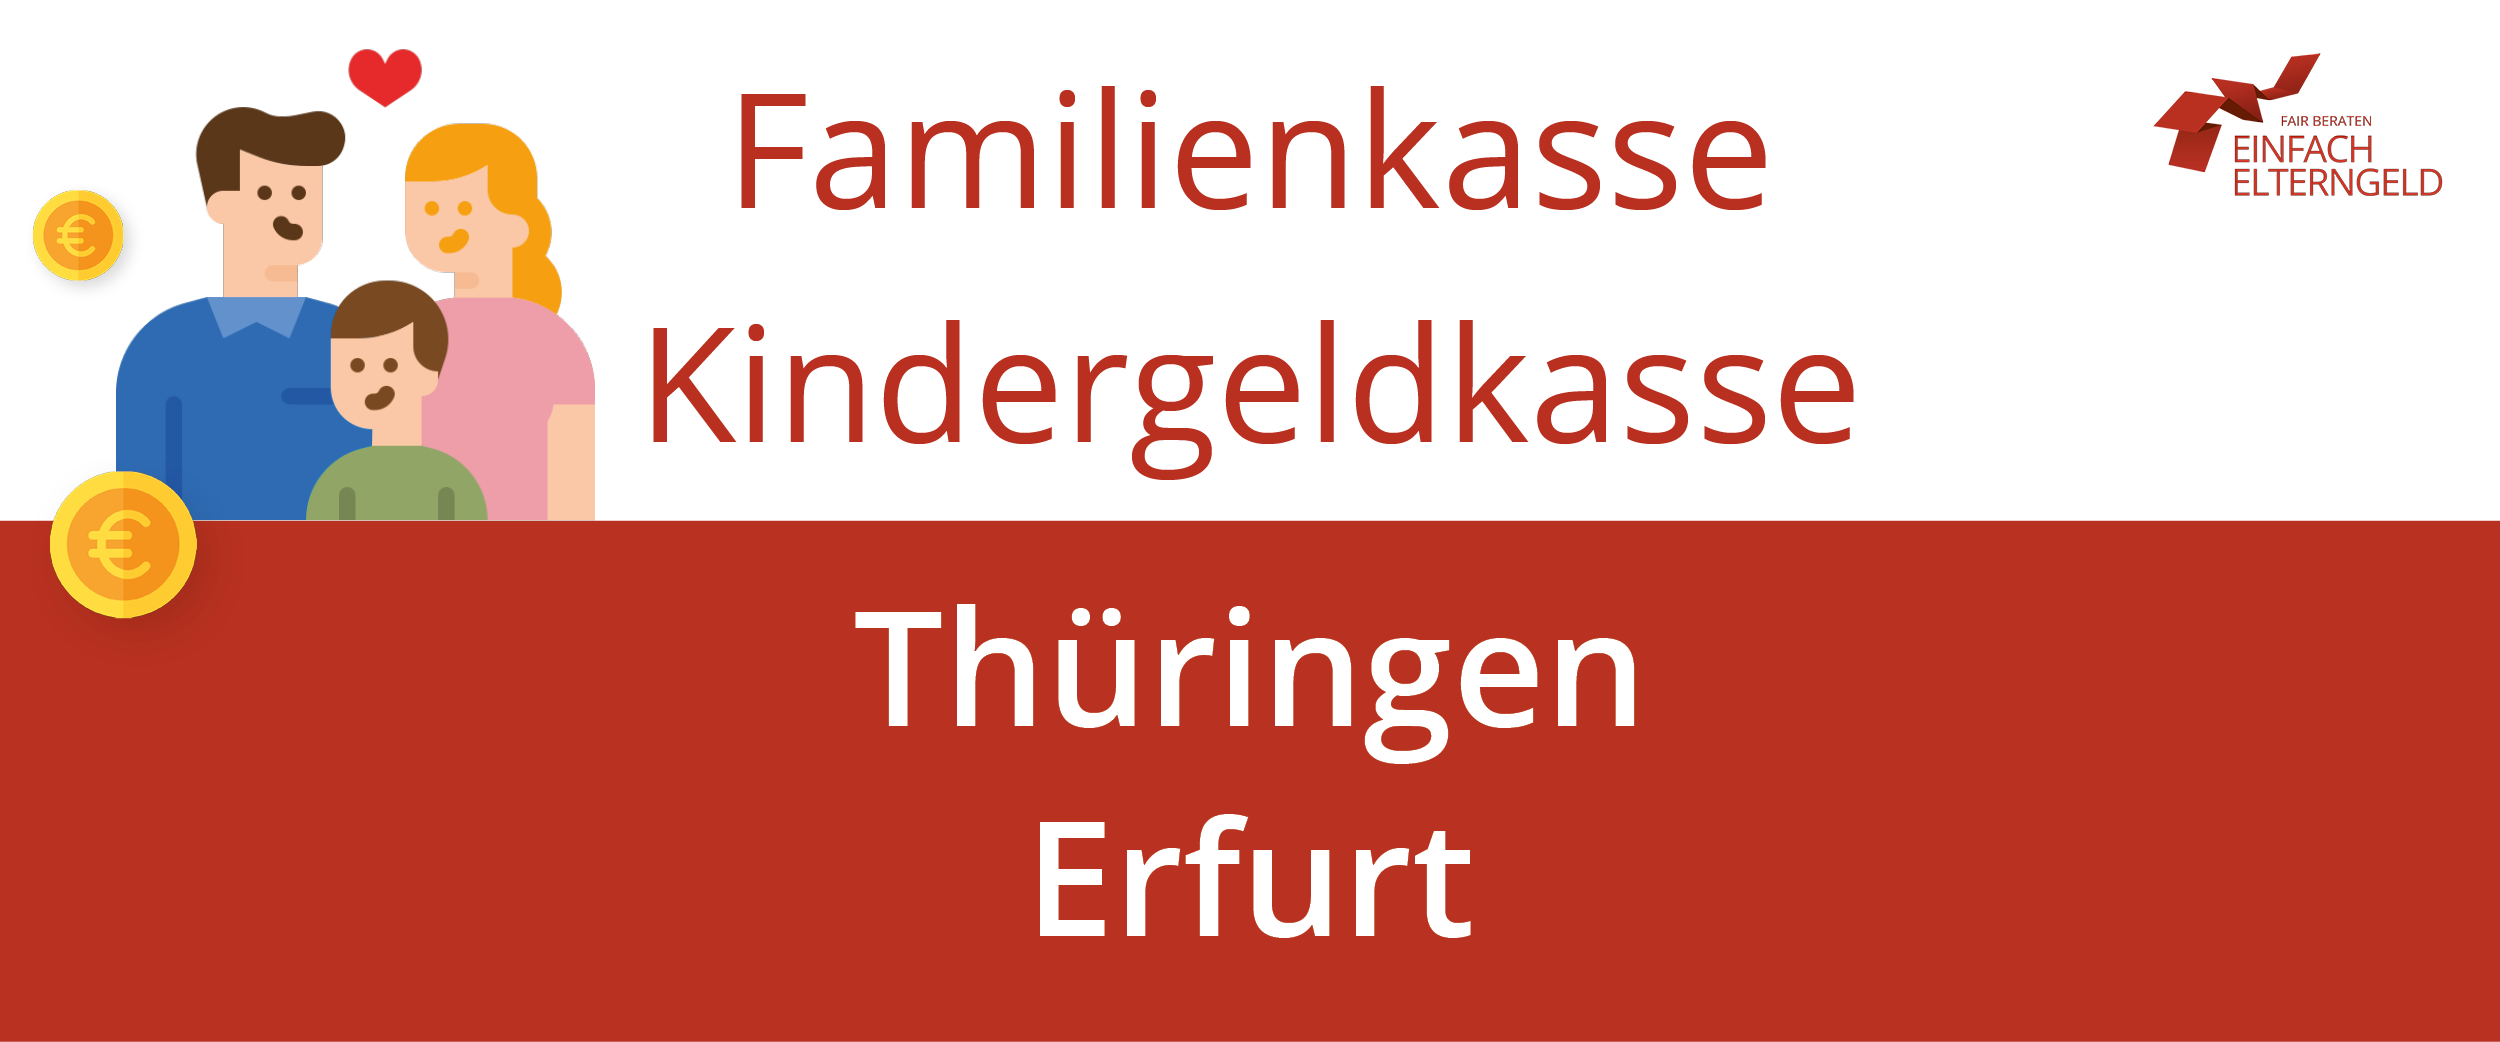 Familienkasse Kindergeldkasse Thüringen Erfurt - So erreichen Sie Ihre Familienkasse.